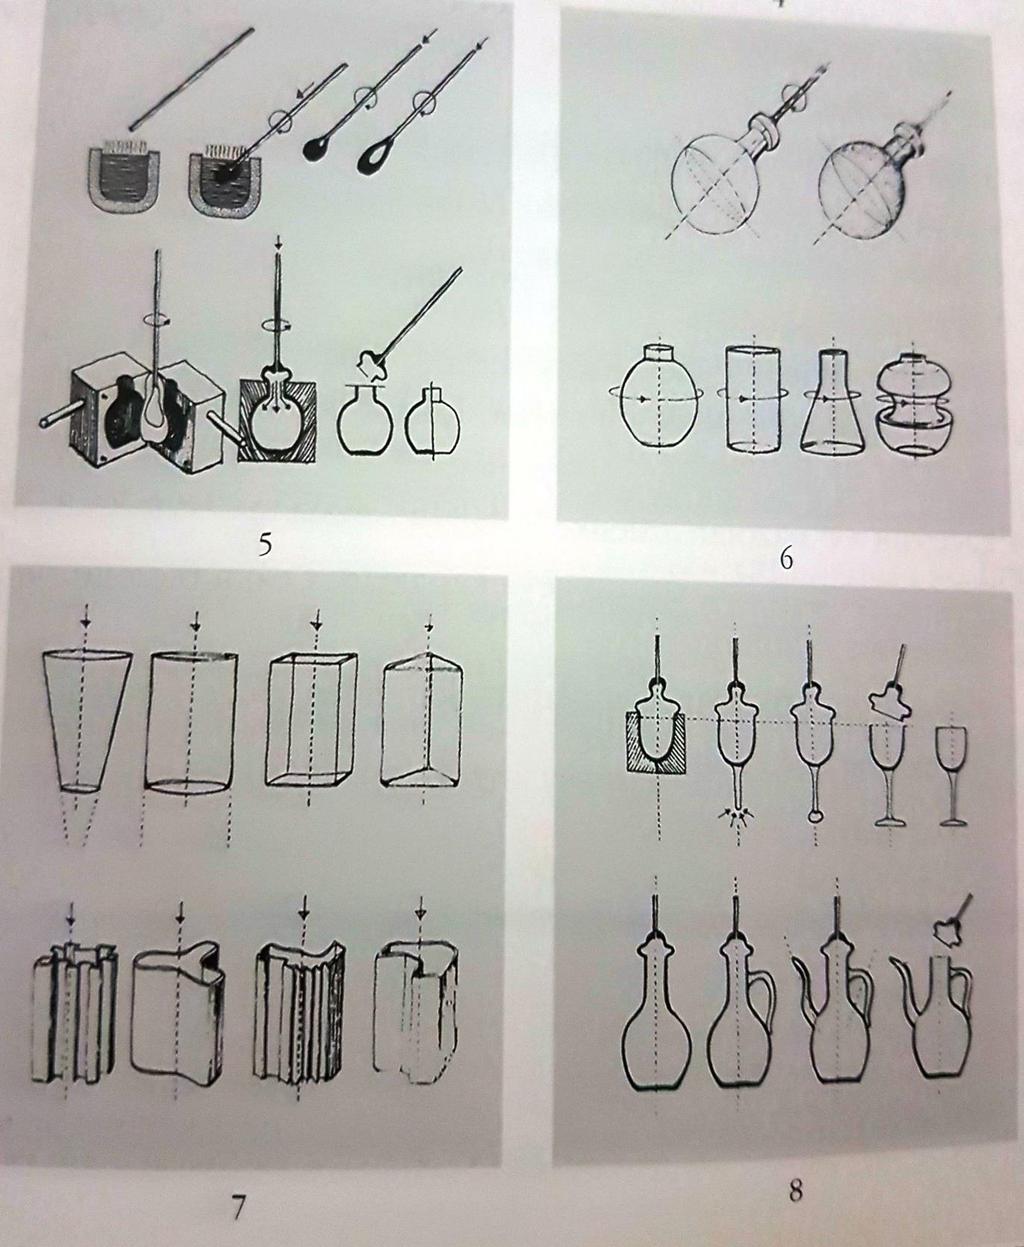 Resim 4.4. Anadolu camcılığında kullanılan teknikler (Küçükerman, 2002, s.